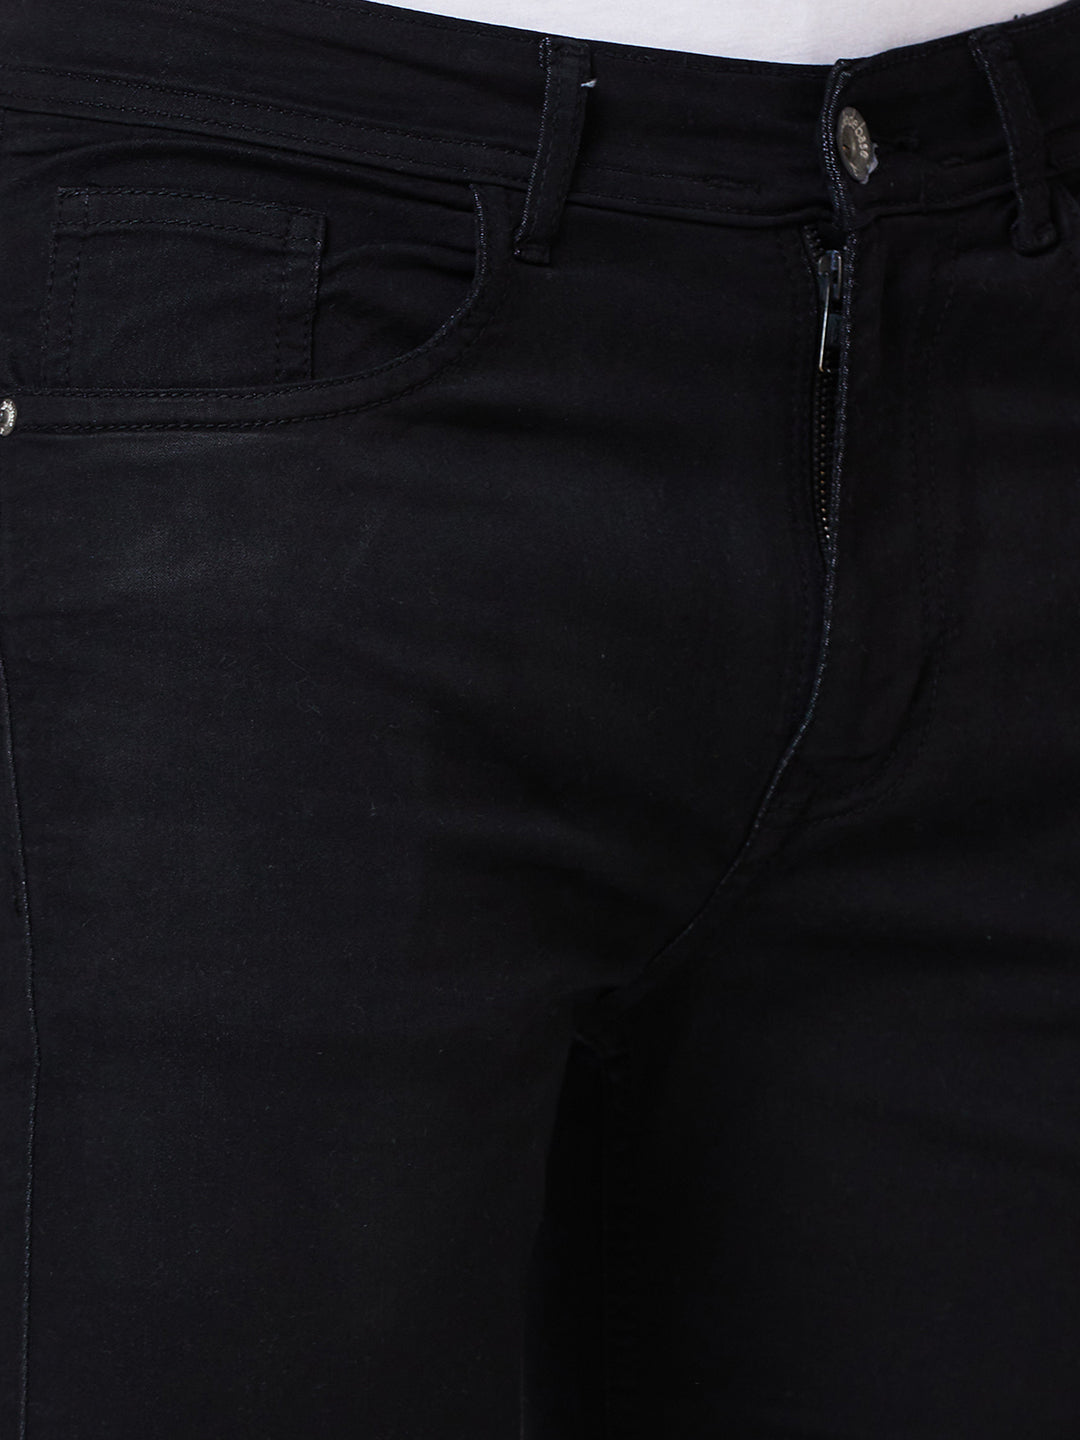 Boho Western Rocker Fringe Trim Distressed Denim Shorts with Pockets –  OliverandJade